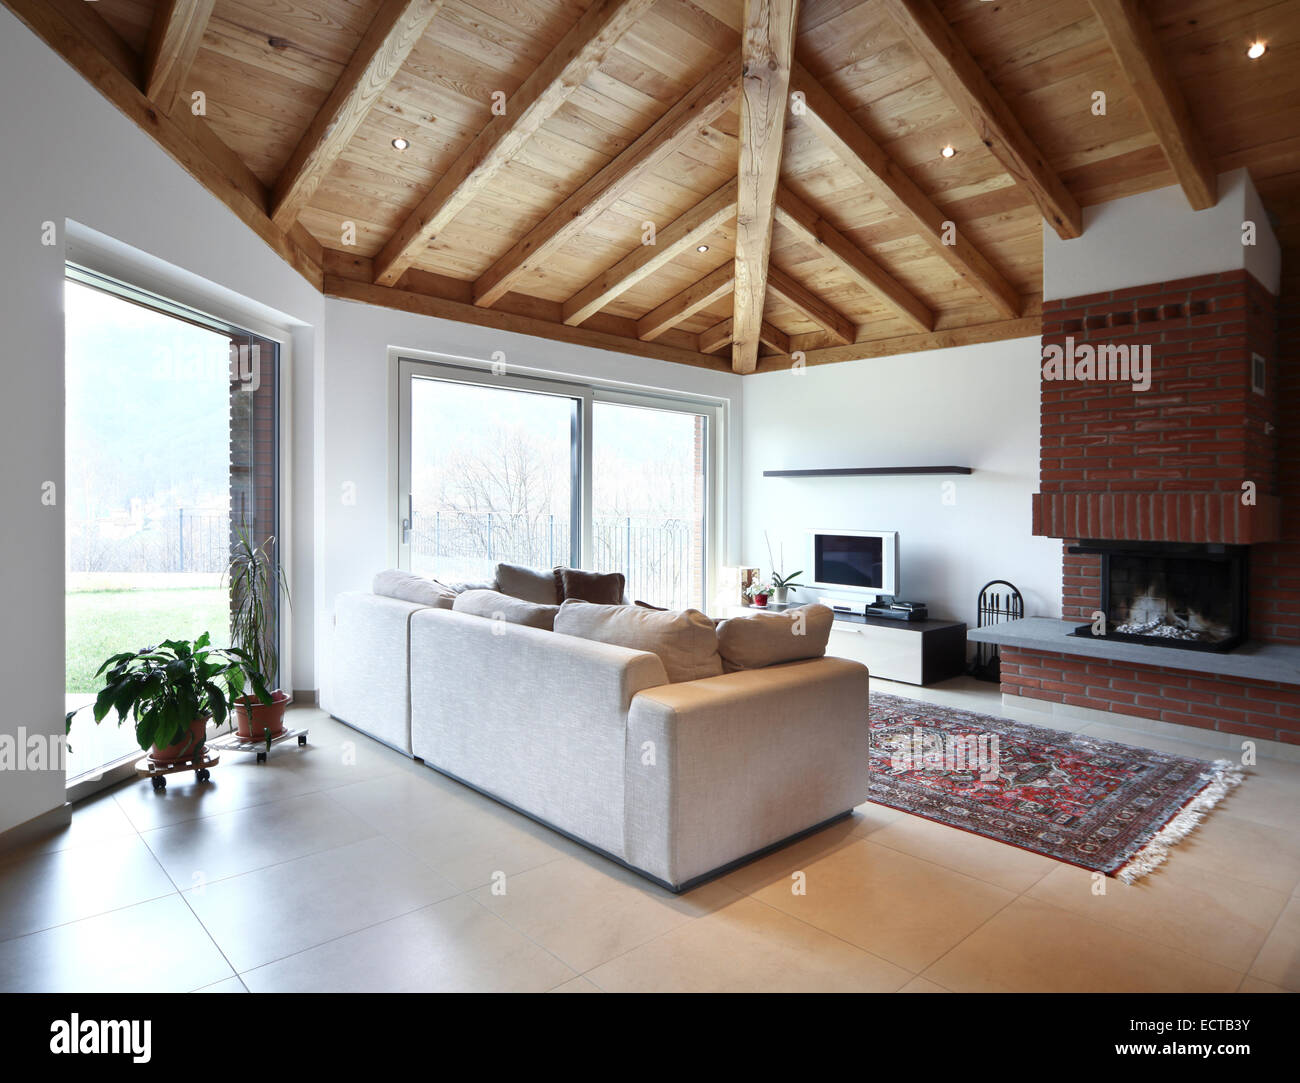 Wooden Roof Interior Design Tunkie